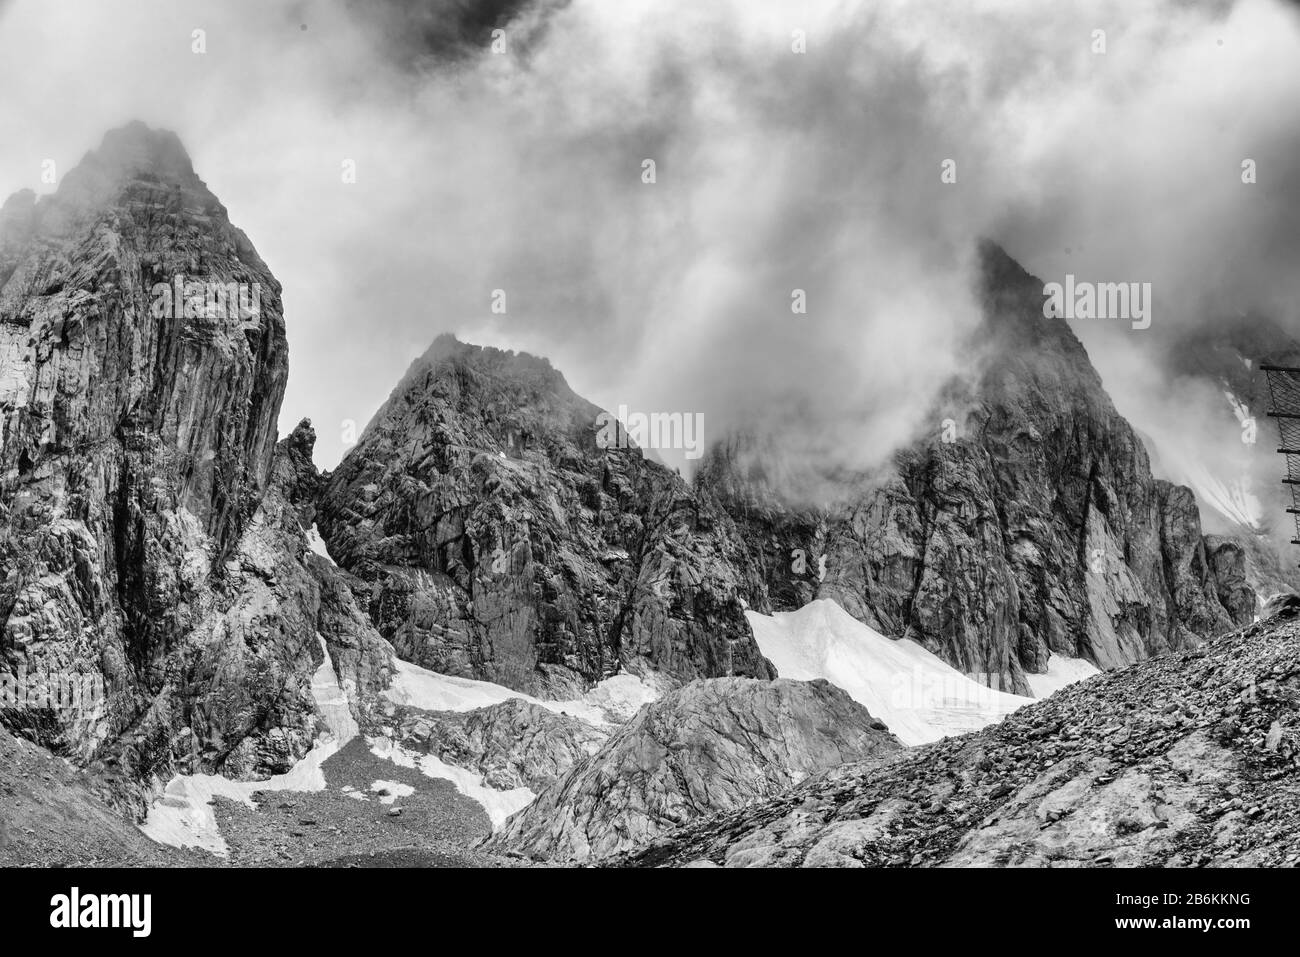 Der Schnee-Berg Jade Dragon, Yulong Xueshan, Lijiang, Provinz Yunnan, China, wo die Gletscher das ganze Jahr über zu sehen sind. Stockfoto